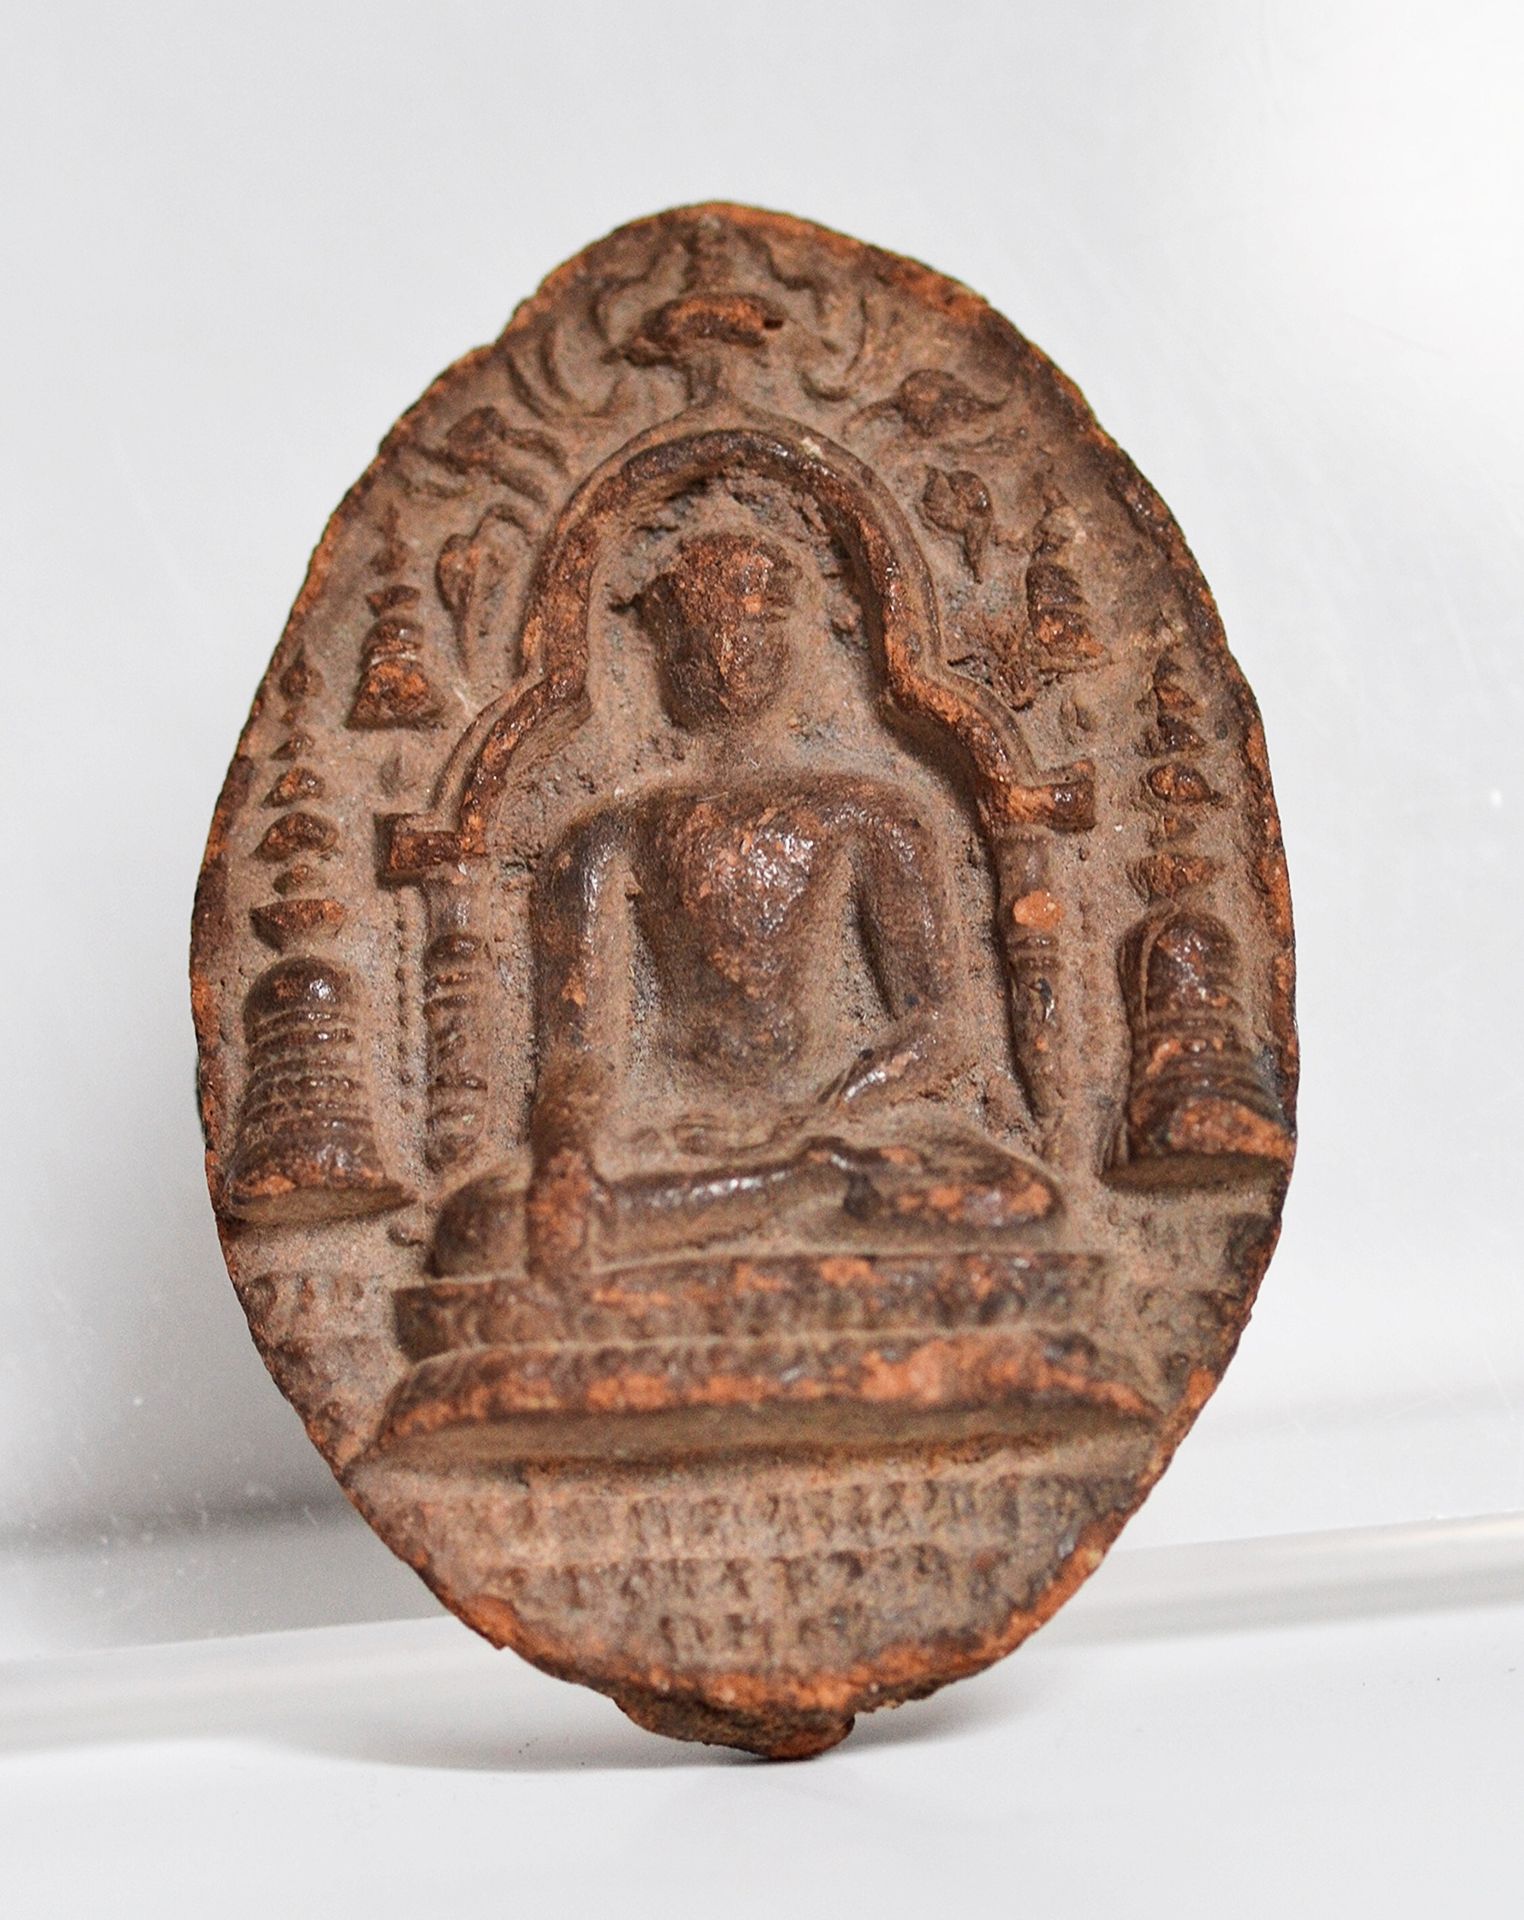 THAÏLANDE Siam, periodo Dvaravati

 Siglo VIII/IX

 

 Impresión votiva de terra&hellip;